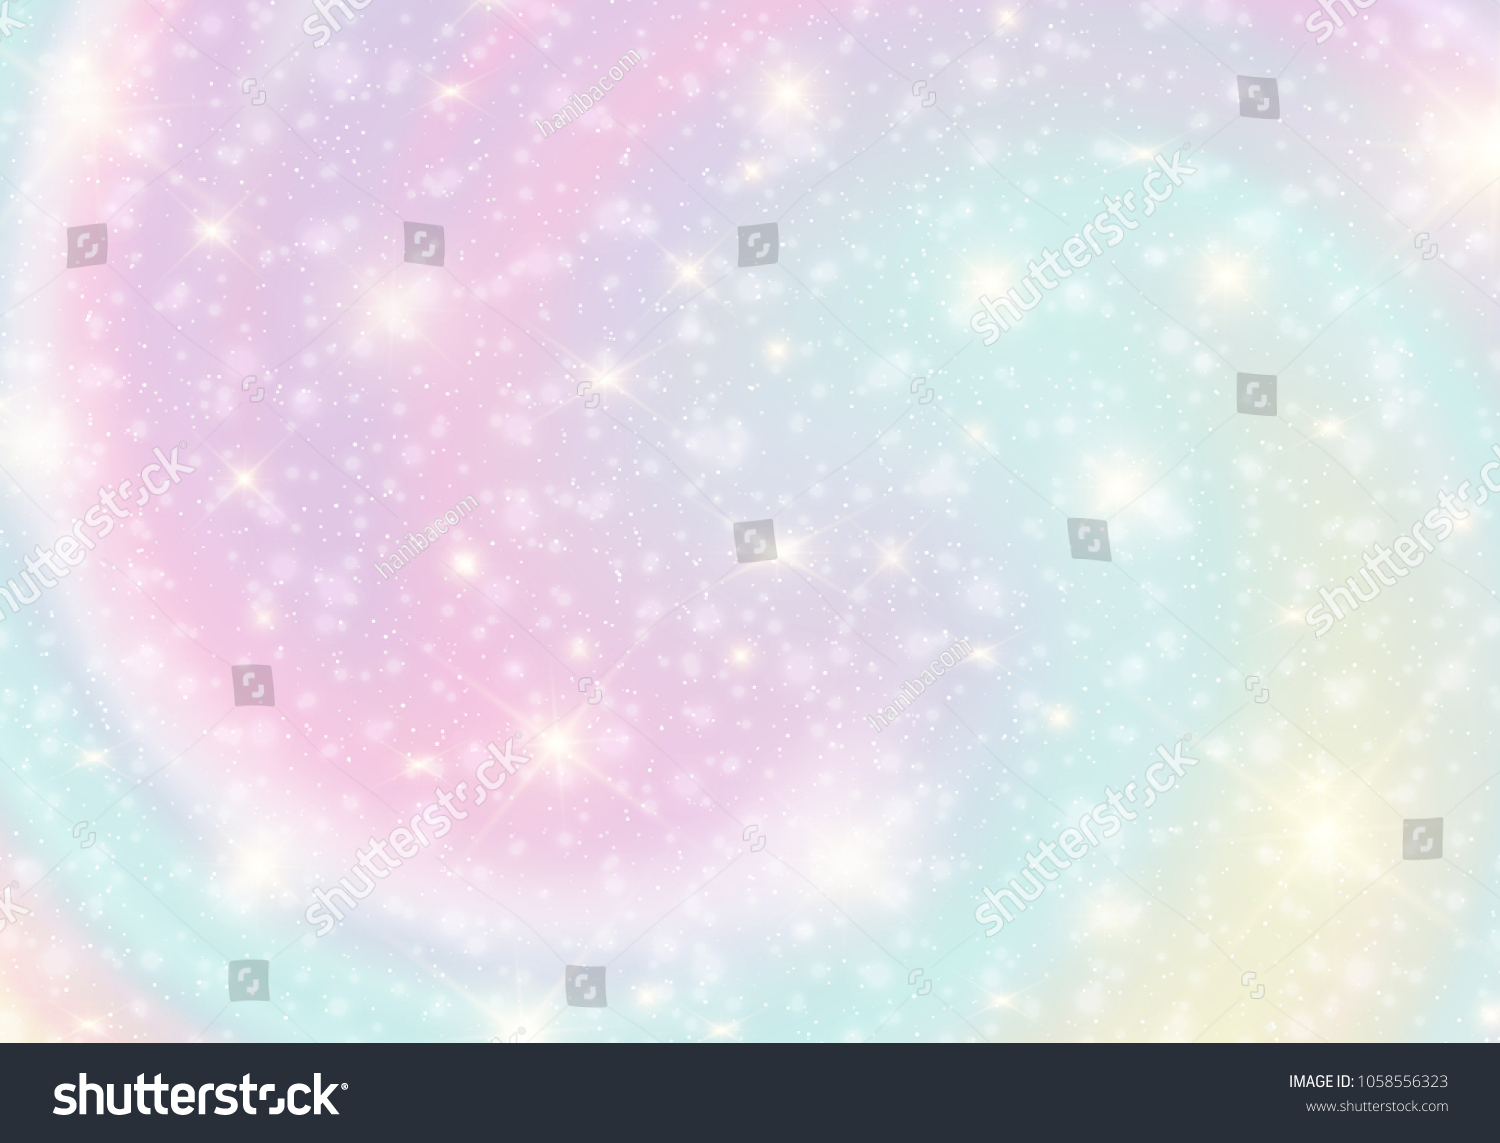 銀河幻想の背景とパステルカラーのイラスト パステル空に虹を描いたユニコーン ボケとパステル雲と空 かわいい明るい飴の背景 のベクター画像素材 ロイヤリティフリー